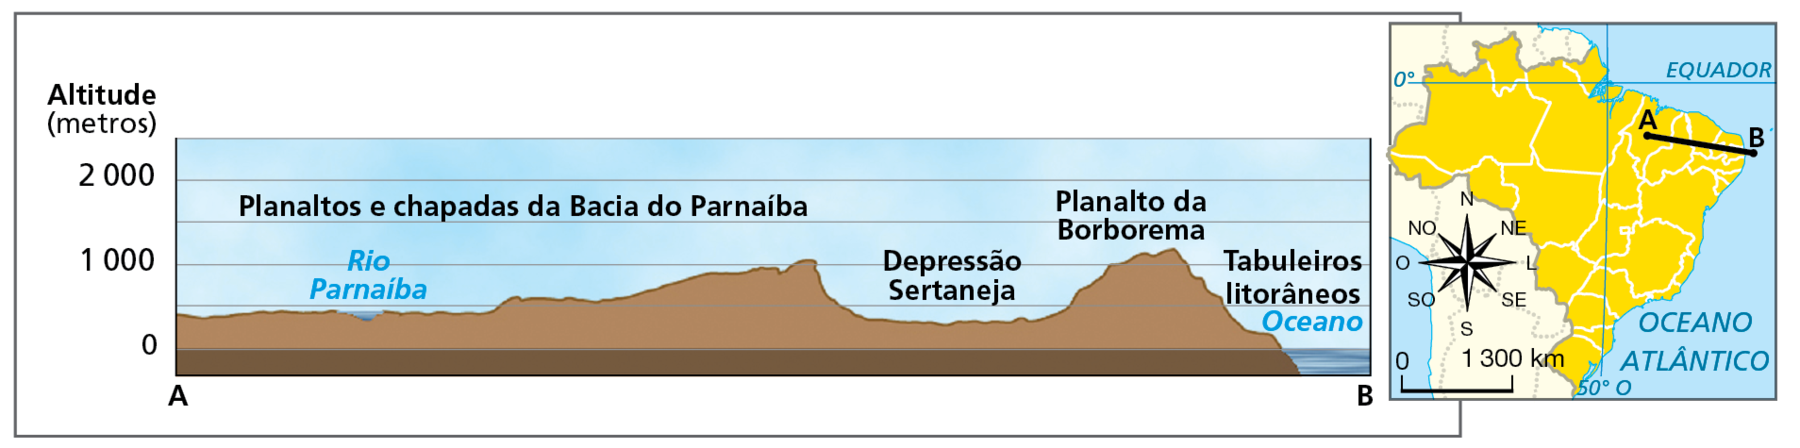 Gráfico. Nordeste do Brasil: perfil do relevo oeste-leste.
Gráfico representando um perfil topográfico das principais formas do relevo da Região Nordeste. À direita do gráfico, mapa reduzido do Brasil com a marcação da linha de corte do perfil, traçada entre o ponto A, localizado na porção oeste do Maranhão, e o ponto B, localizado na faixa oceânica próxima ao continente. A linha do perfil está posicionada na direção de oeste-noroeste a leste-sudeste. 
No perfil traçado no gráfico, a distância entre os pontos A e B representa o eixo horizontal; o eixo vertical indica os intervalos das cotas de altitude em metros: 0 (nível do mar), 1.000 e 2.000. 
O ponto A se encontra a aproximadamente 480 metros de altitude, sob terrenos sedimentares dos planaltos e chapadas da bacia do Parnaíba. Seguindo em direção ao ponto B, o perfil do relevo varia em terras de altitudes entre 500 e 1.000 metros, até avançar ao longo da depressão sertaneja, que se encontra em terras de altitudes que variam entre 450 e 500 metros. Na sequência, ao longo do planalto da Borborema, sob terrenos cristalinos, as altitudes são mais elevadas, chegando a aproximadamente 1.200 metros. Adentrando os tabuleiros litorâneos, as altitudes diminuem até atingir o nível do mar, onde está localizado o ponto B. 
Dentro do mapinha, rosa dos ventos e escala de 0 a 1.300 quilômetros.